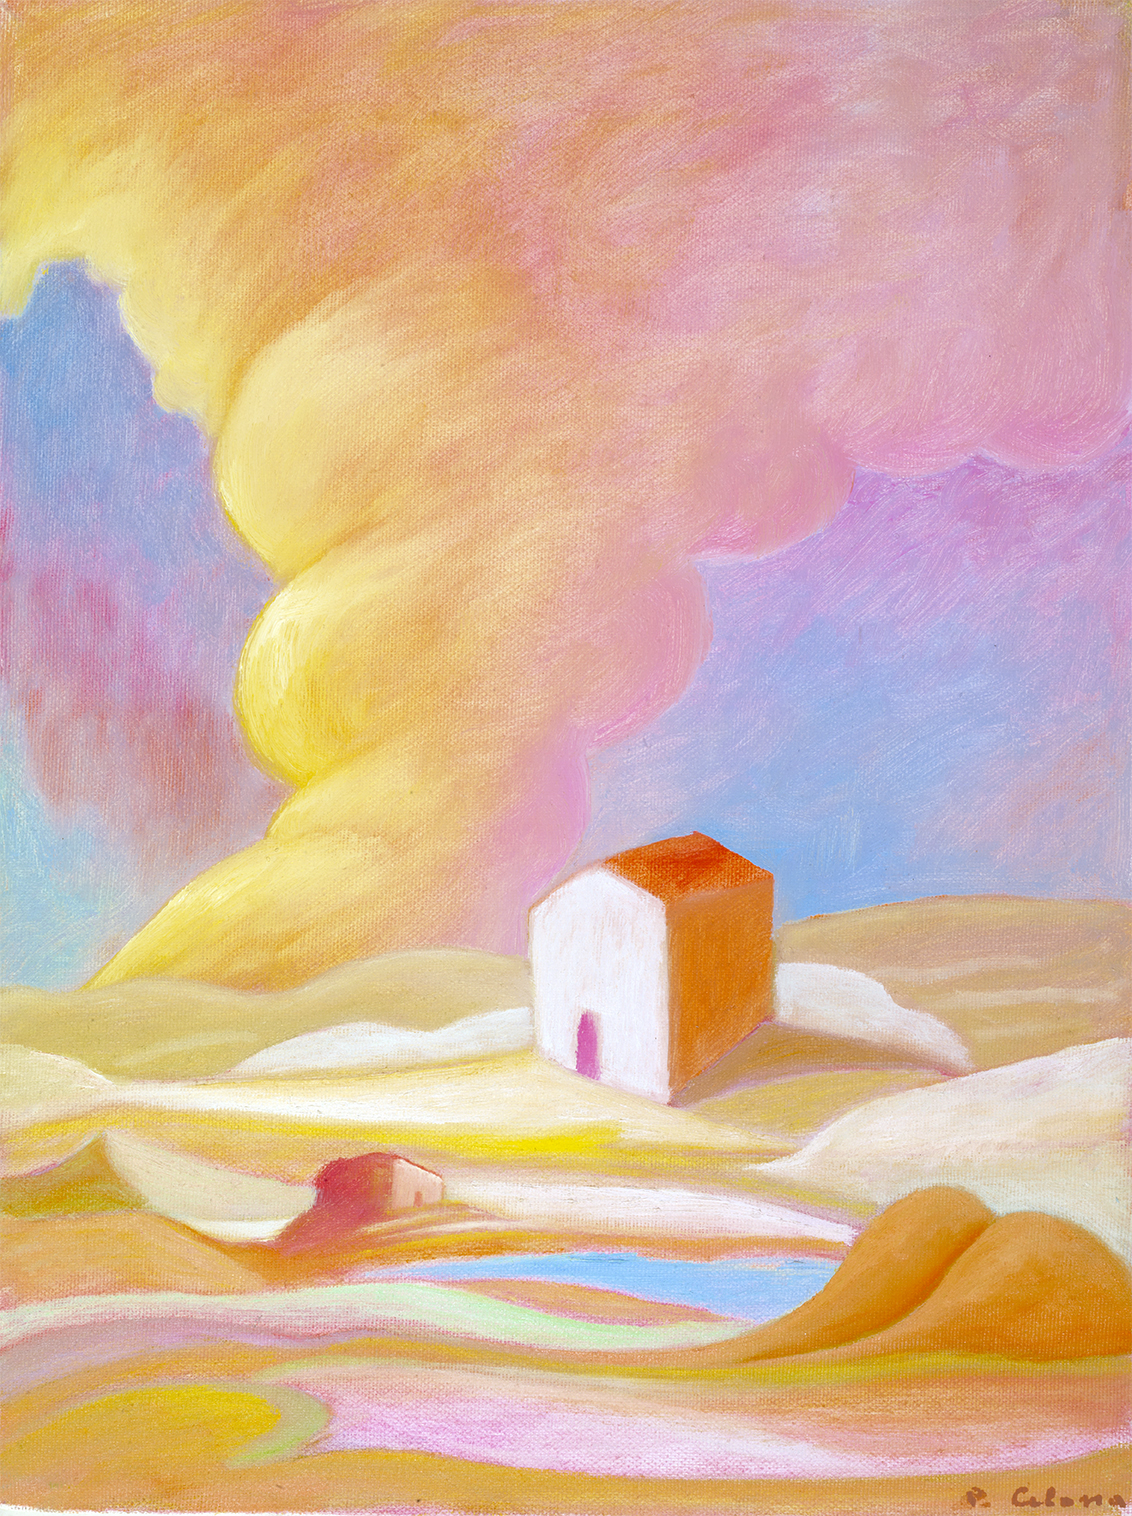 Paesaggio con nuvole, 1990
Olio su tela
40 x 30 cm